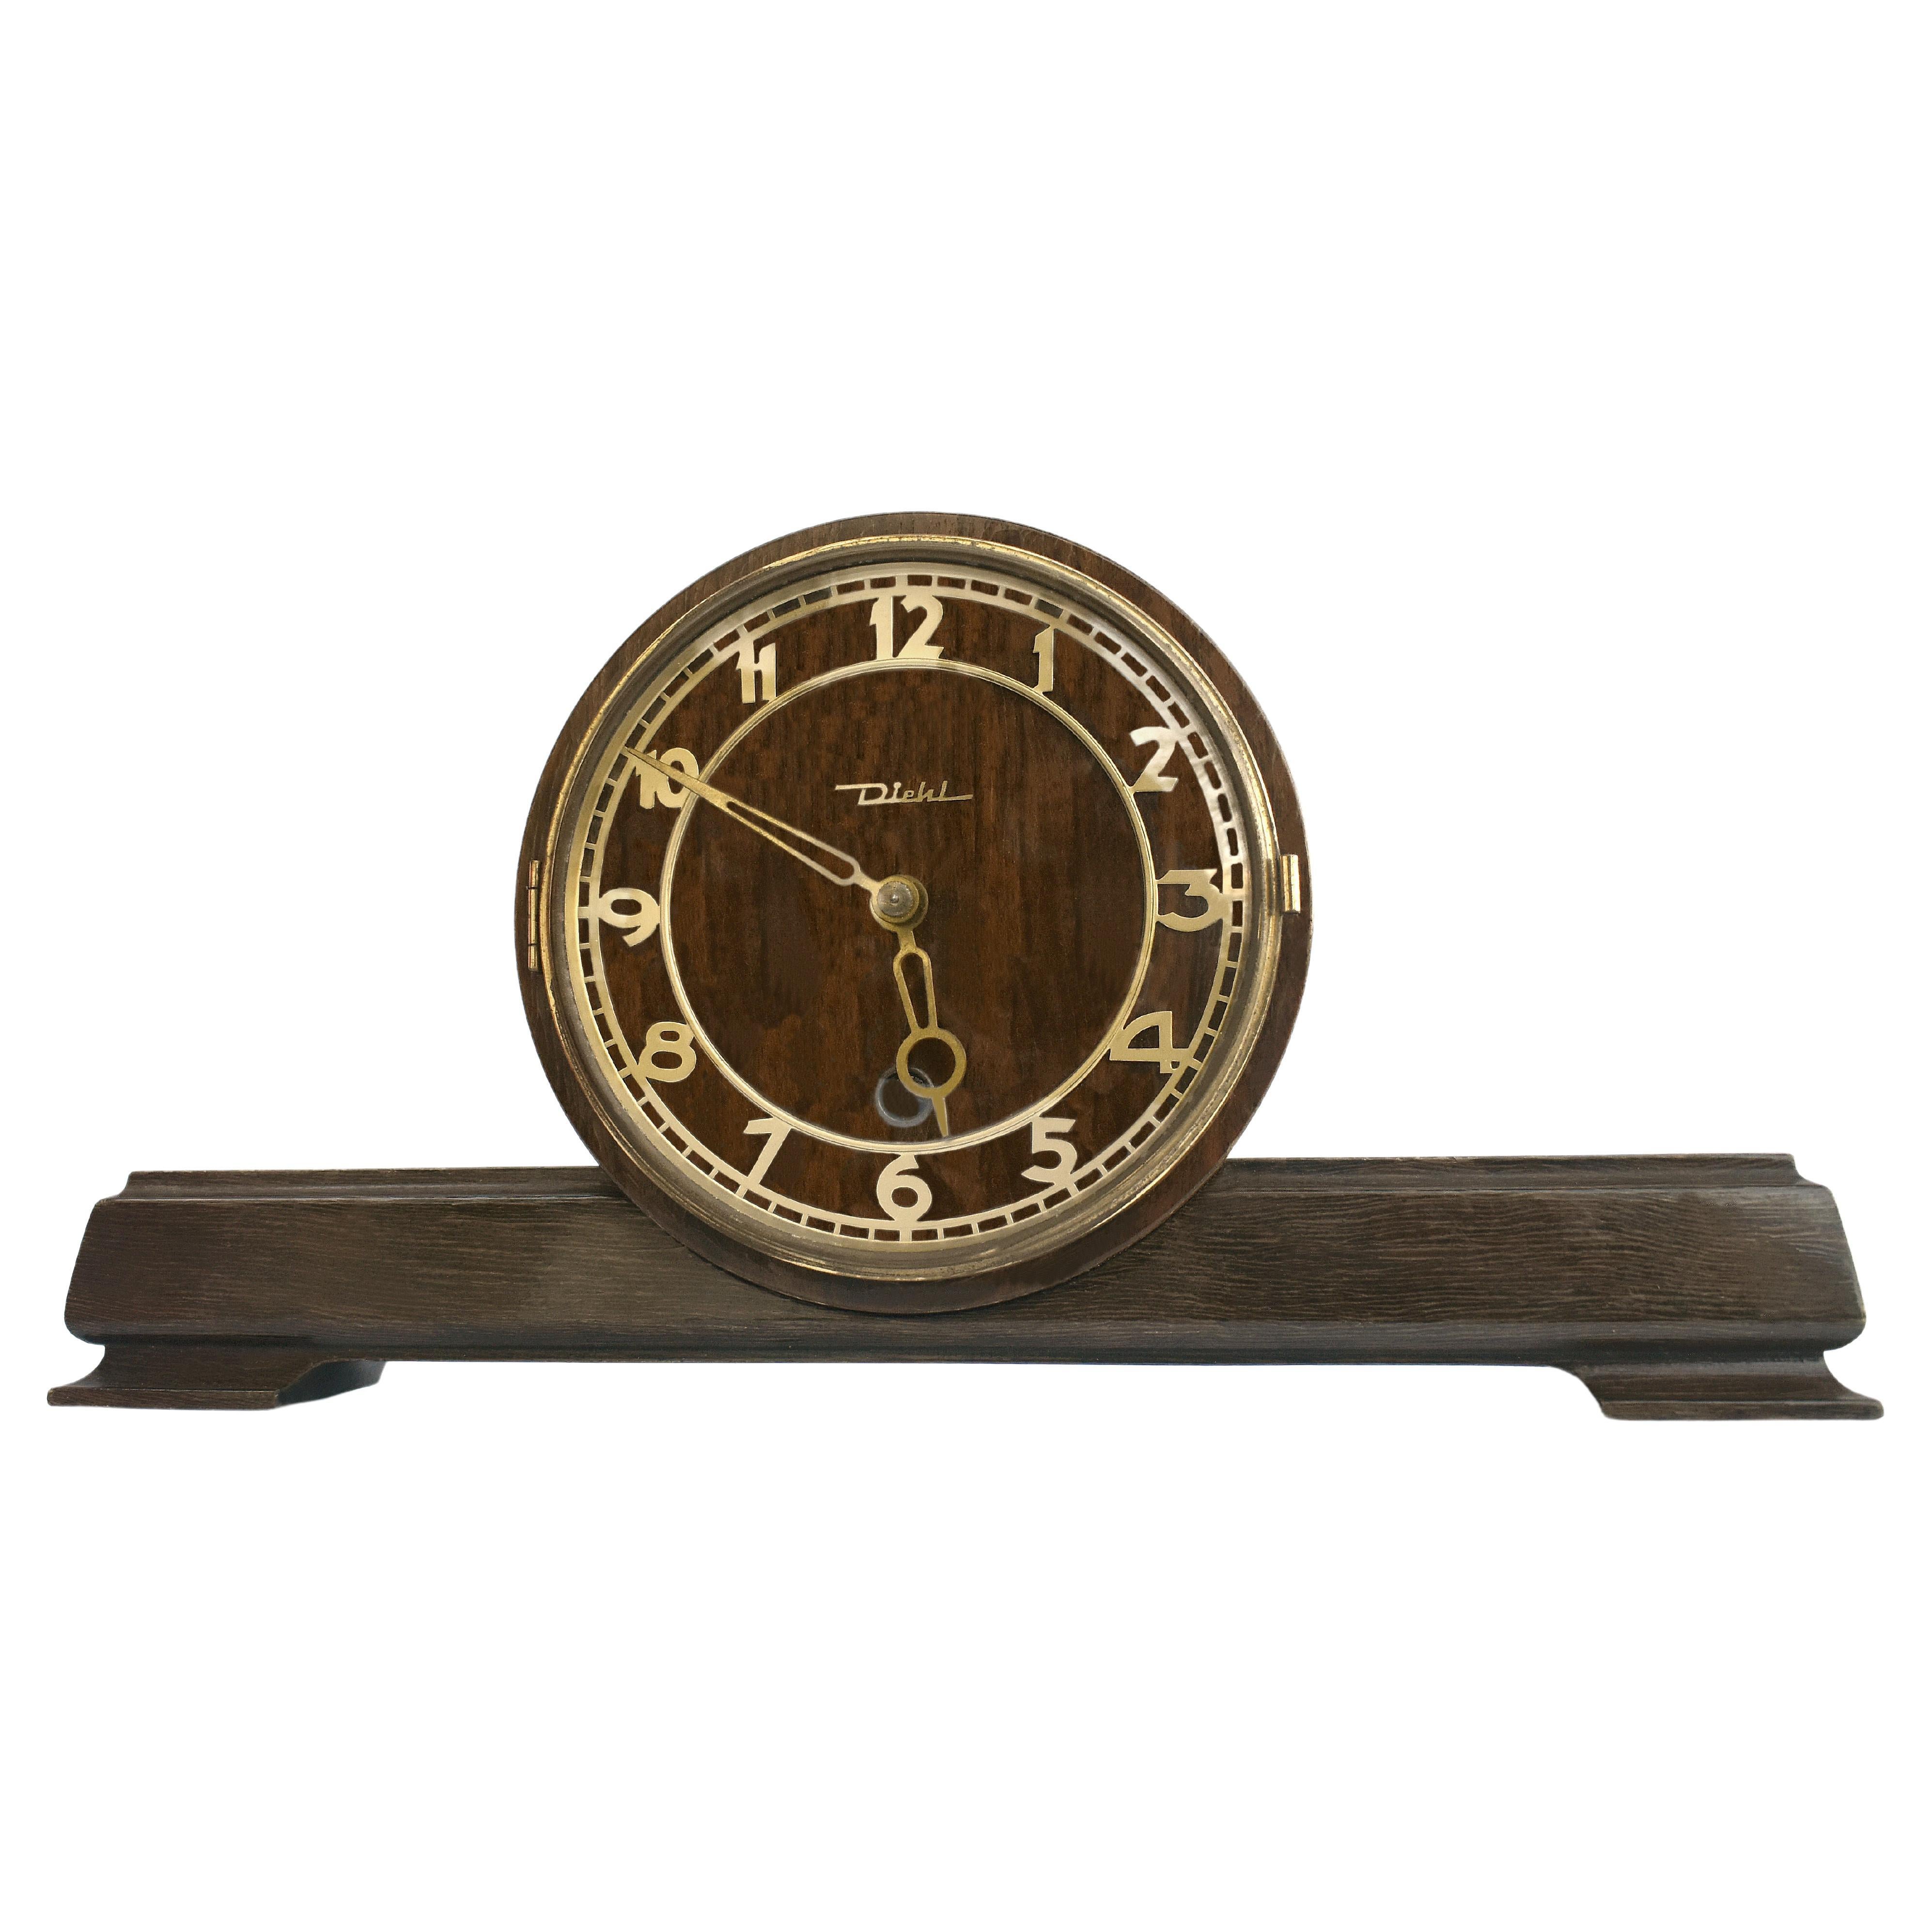 Art Deco German Mantle Clock by Diehl, c1930